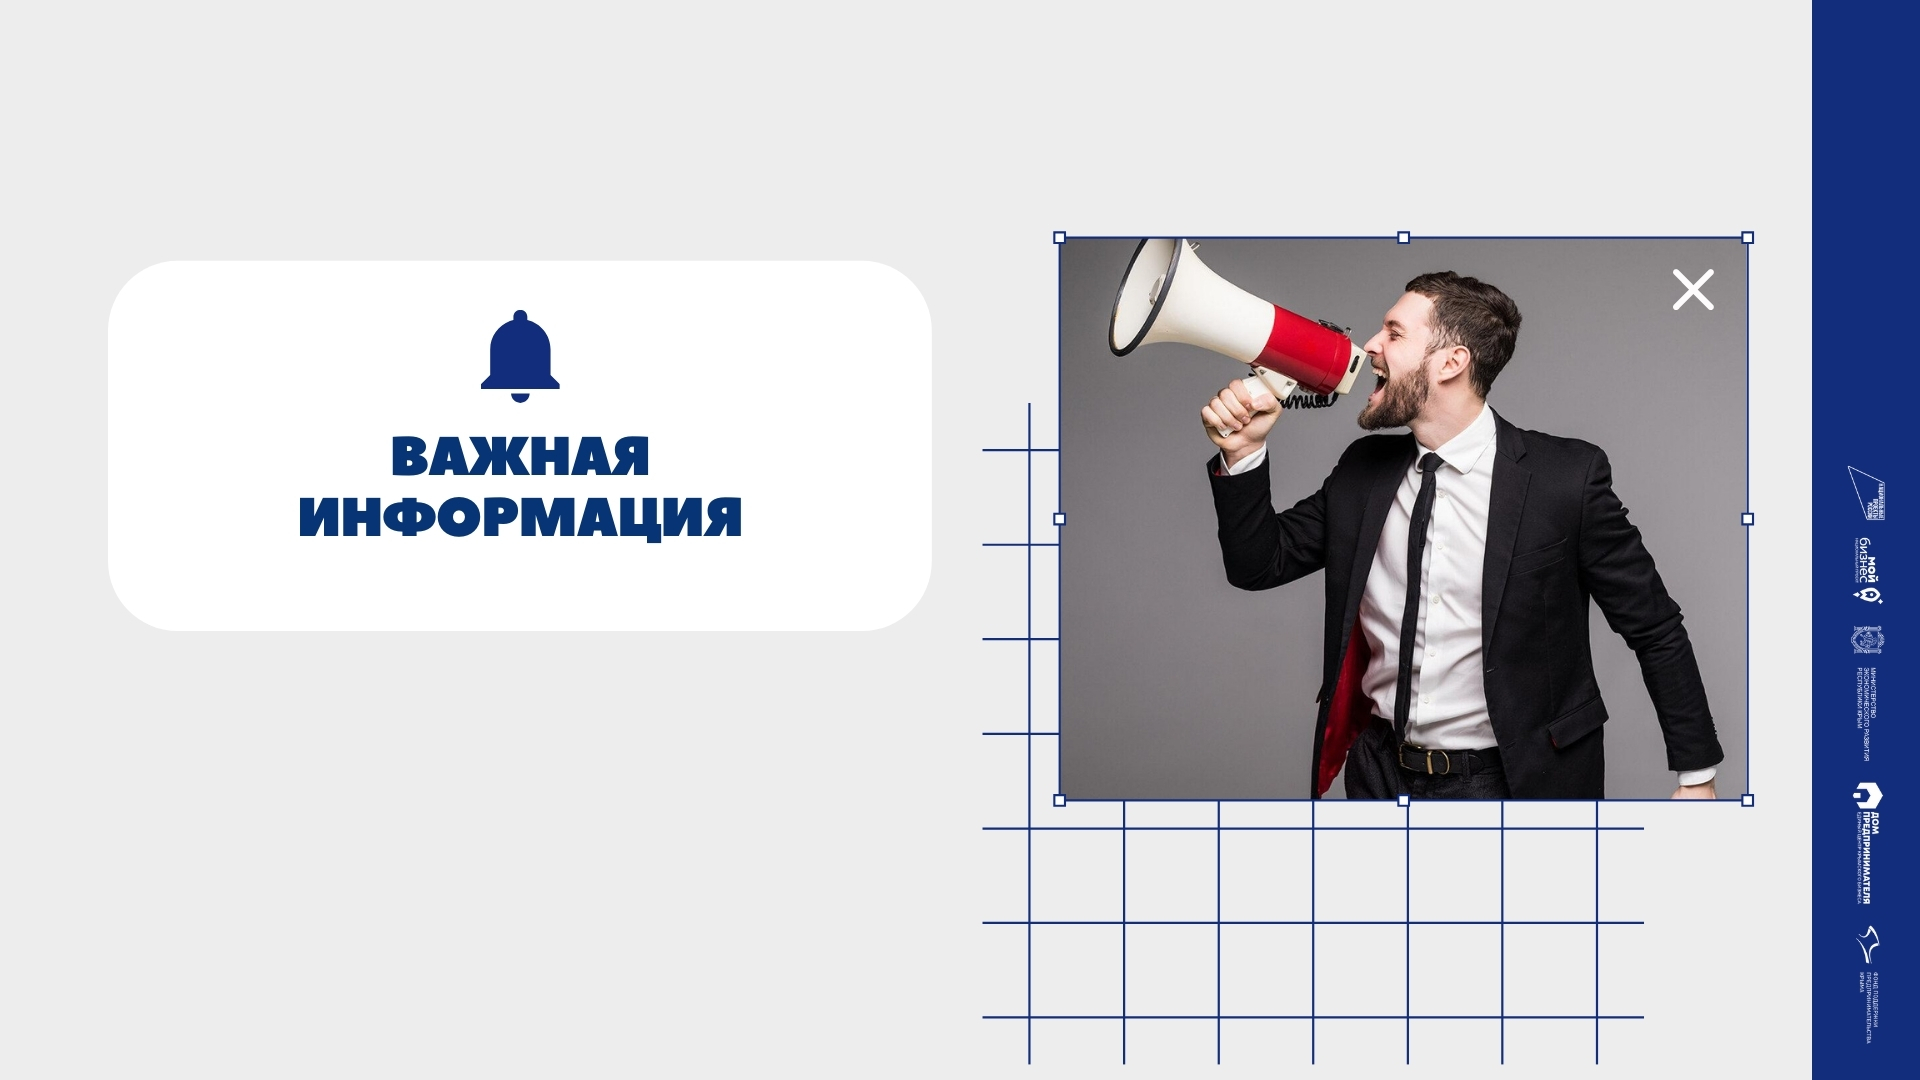 Присоединяйтесь к Всероссийскому проекту «Наше будущее. Новые лица»!